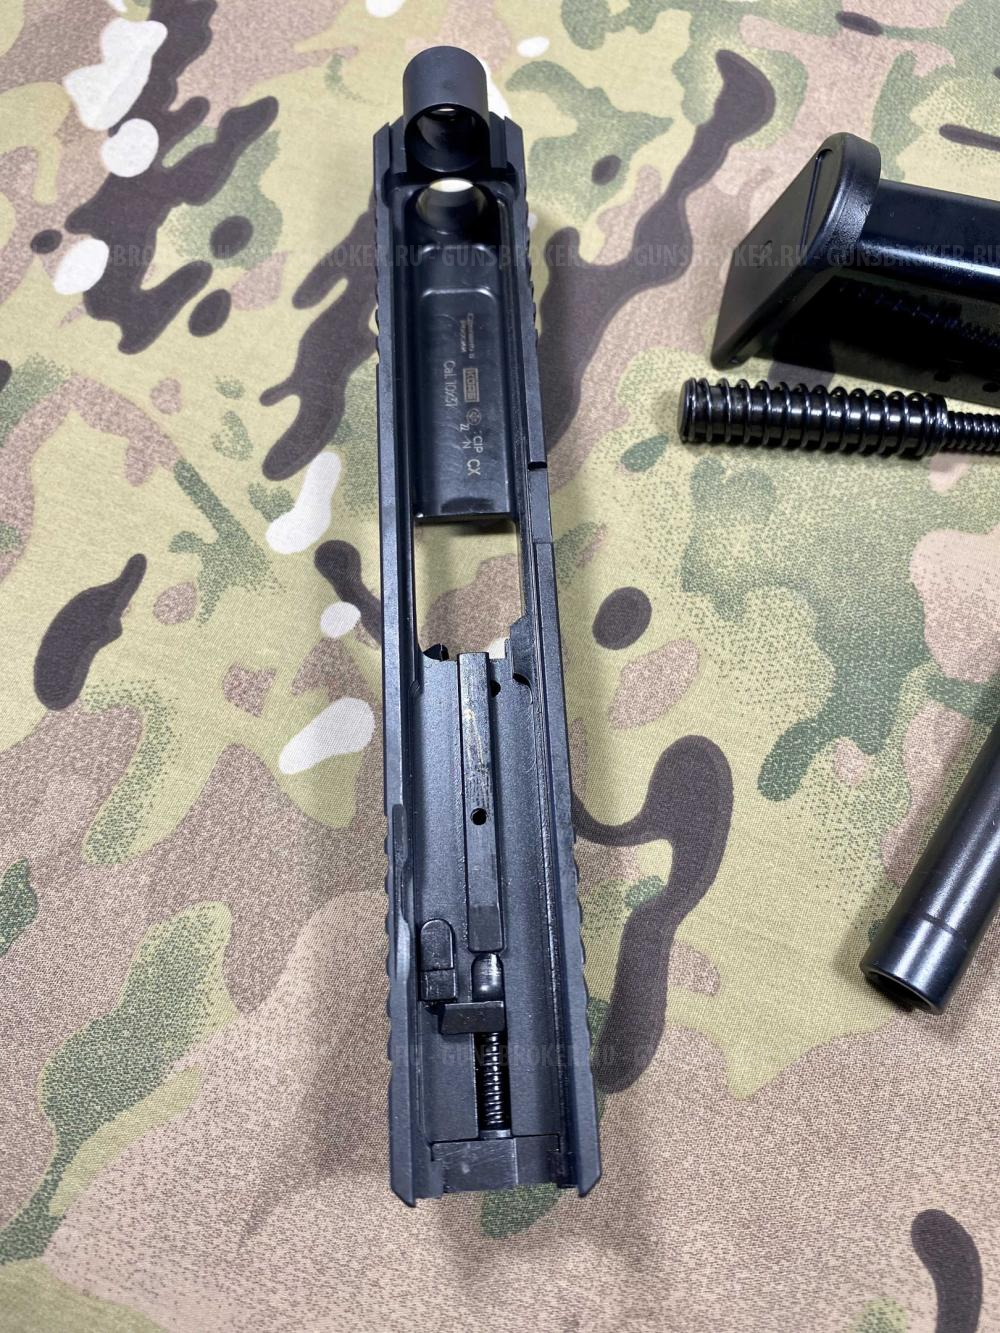 Охолощенный пистолет AHSS FXS-9  , НОВЫЕ